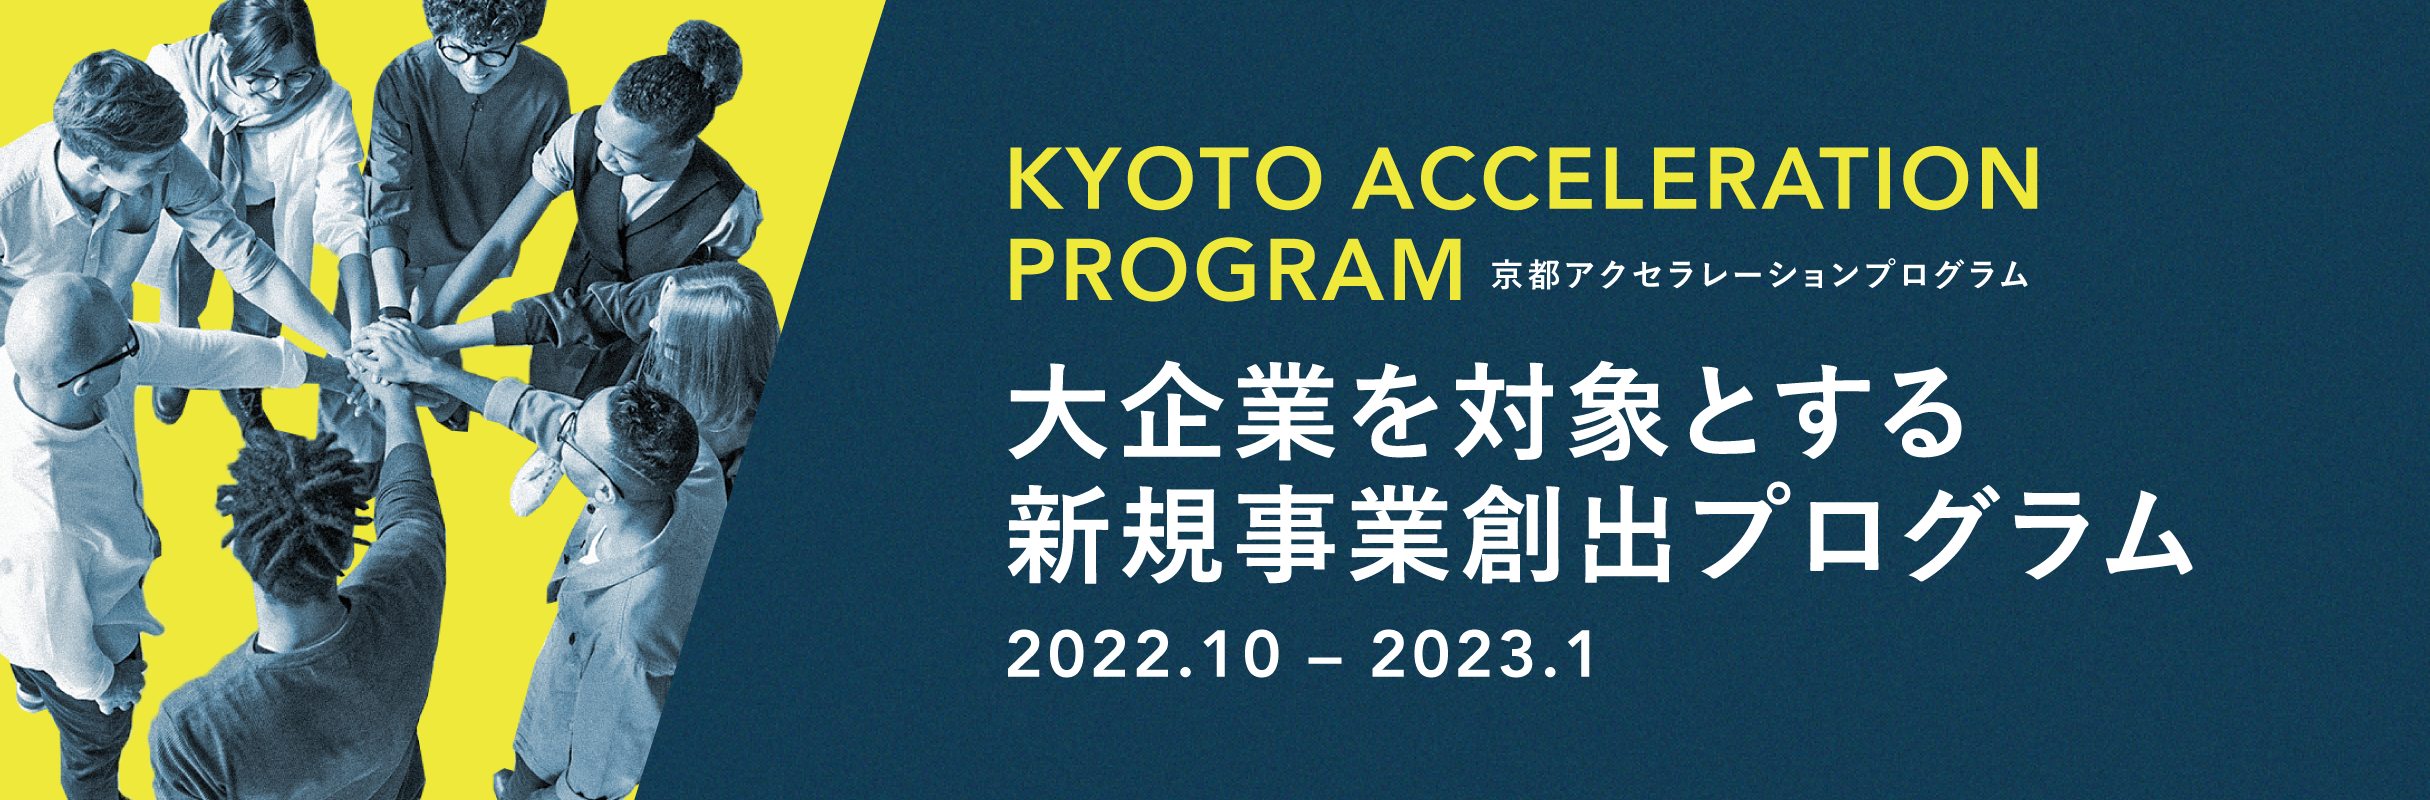 京都アクセラレーションプログラム